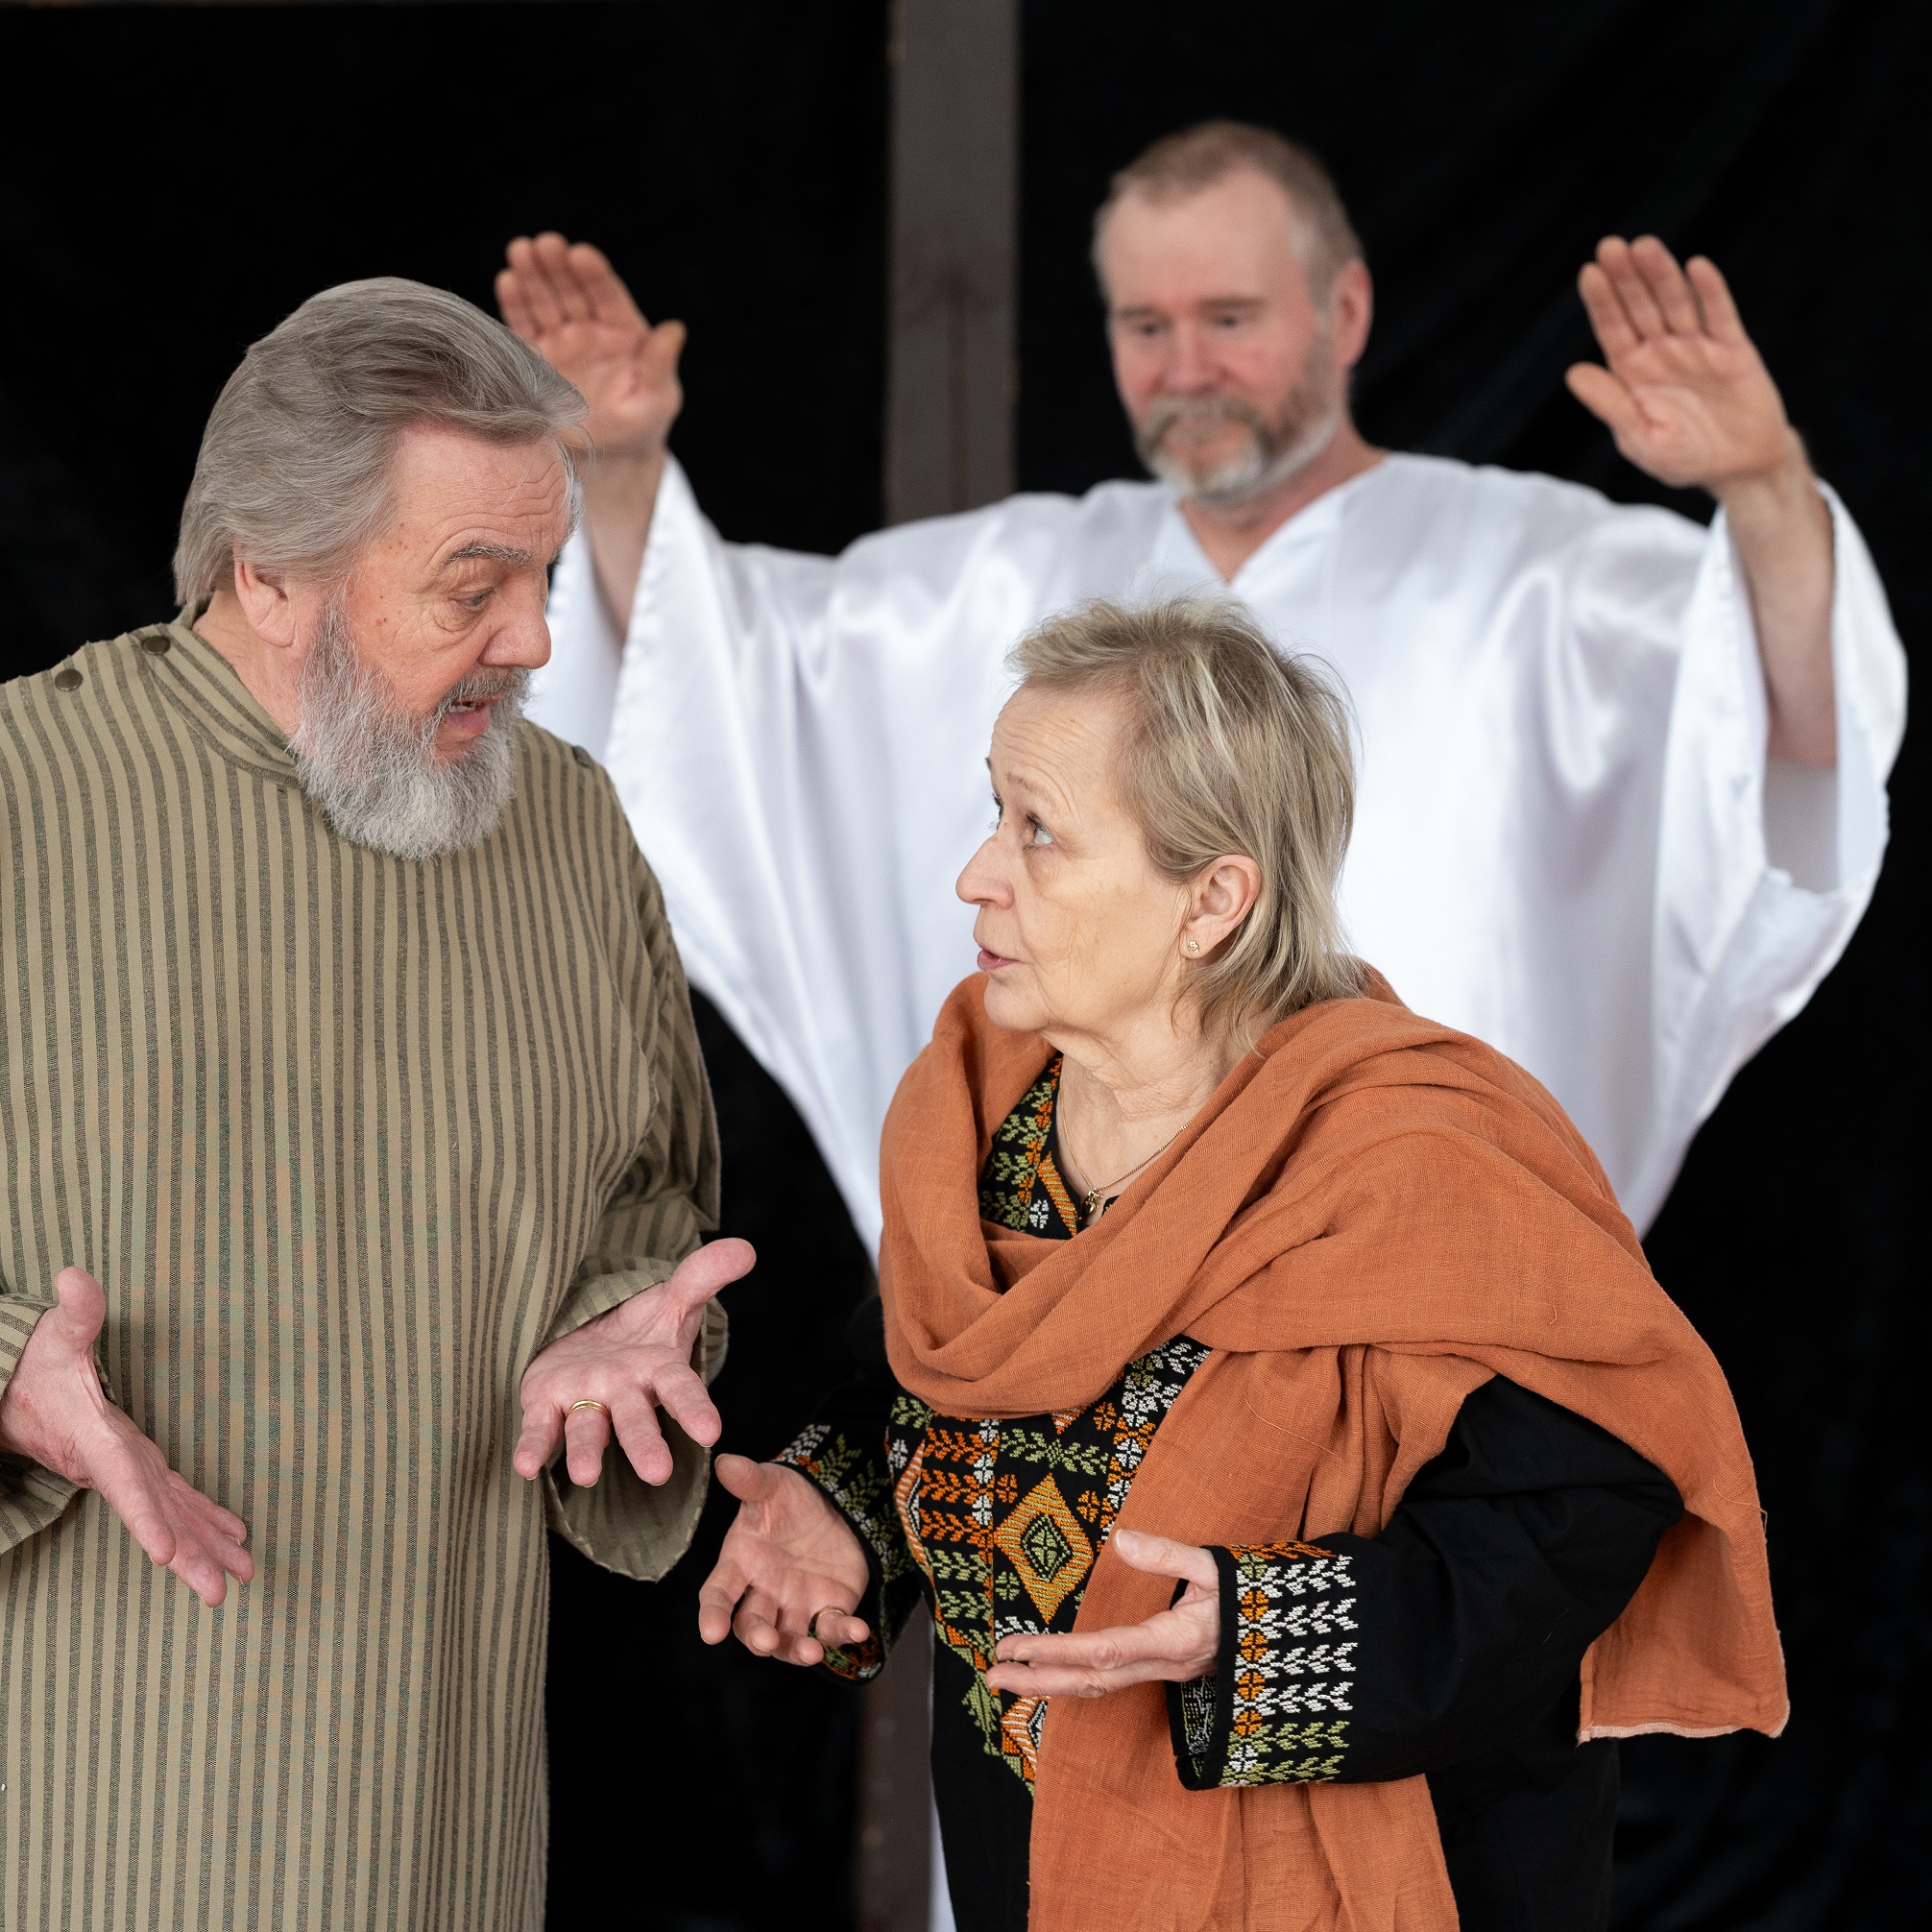 Jeesus on kuvassa taustalla kädet kohotettuina siunaukseen. Kaksi näyttelijää keskustelevat etualalla.